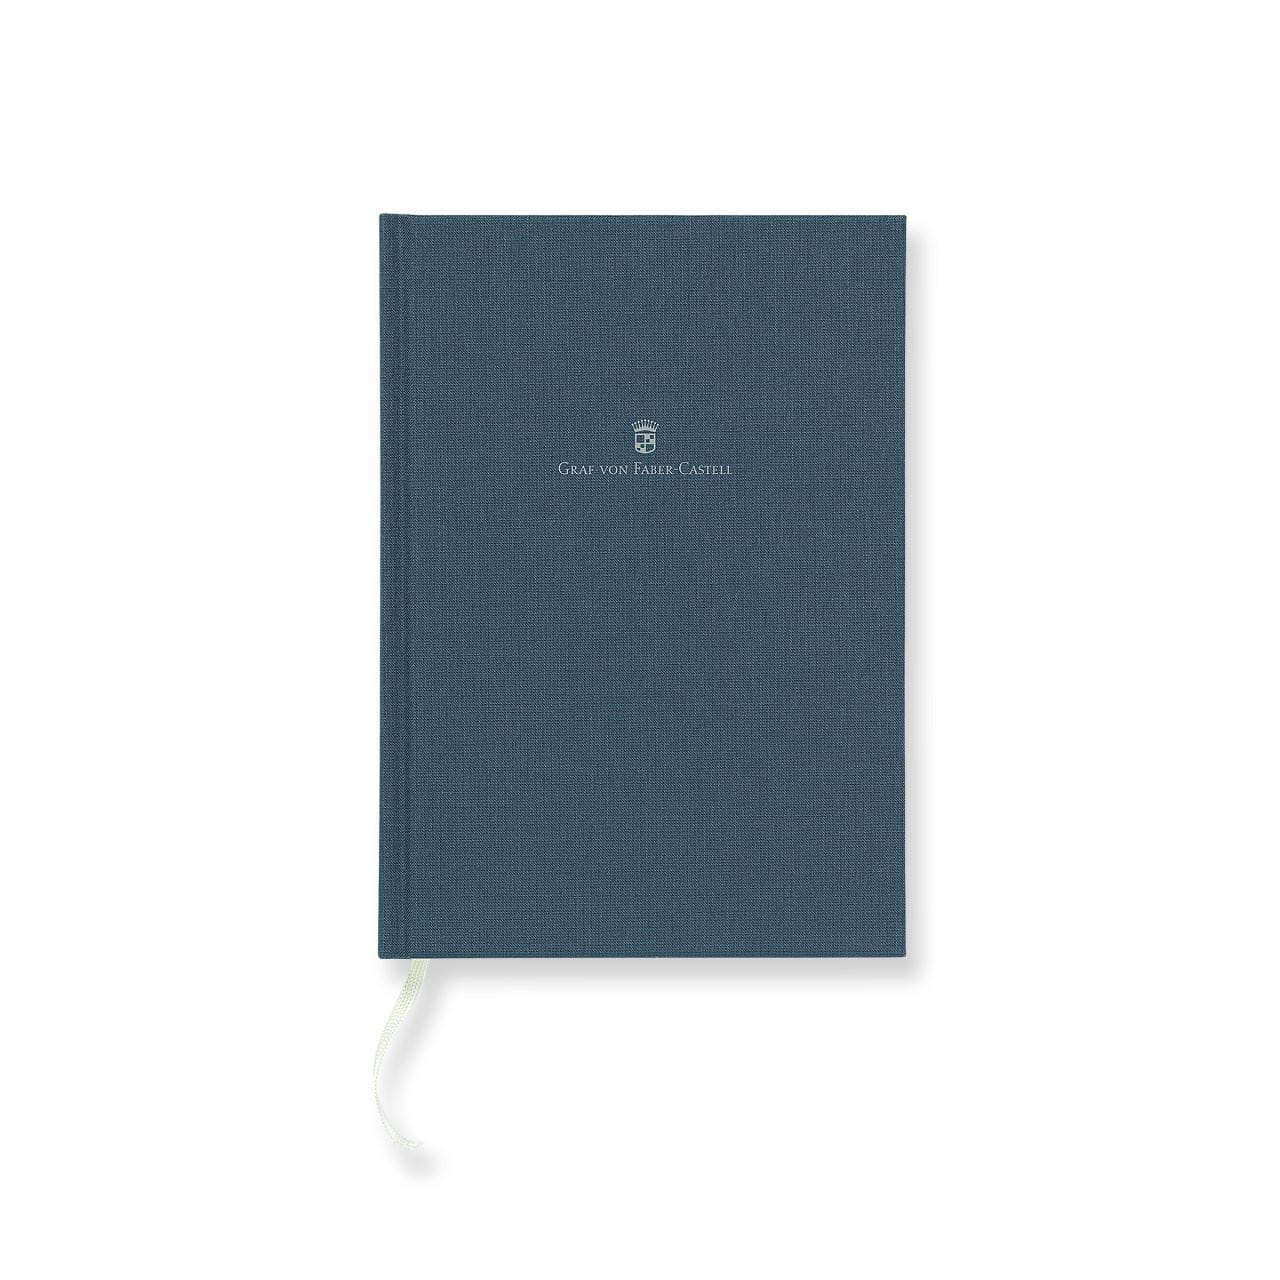 Graf-von-Faber-Castell - Caderno com capa de linho de tamanho A5, Azul